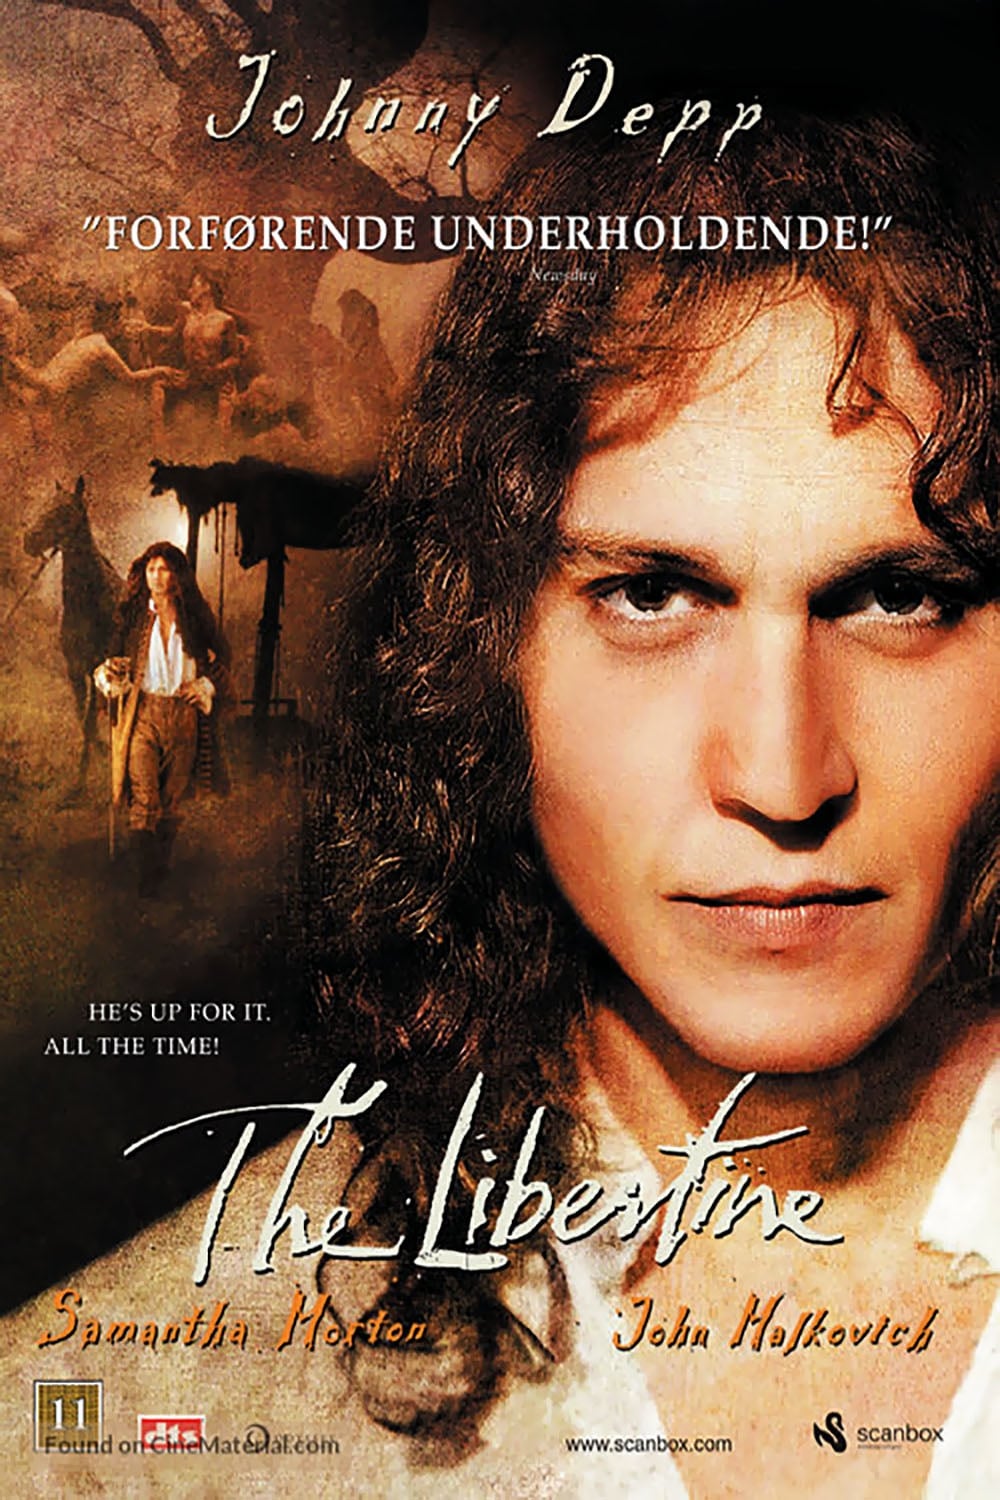 2004 The Libertine